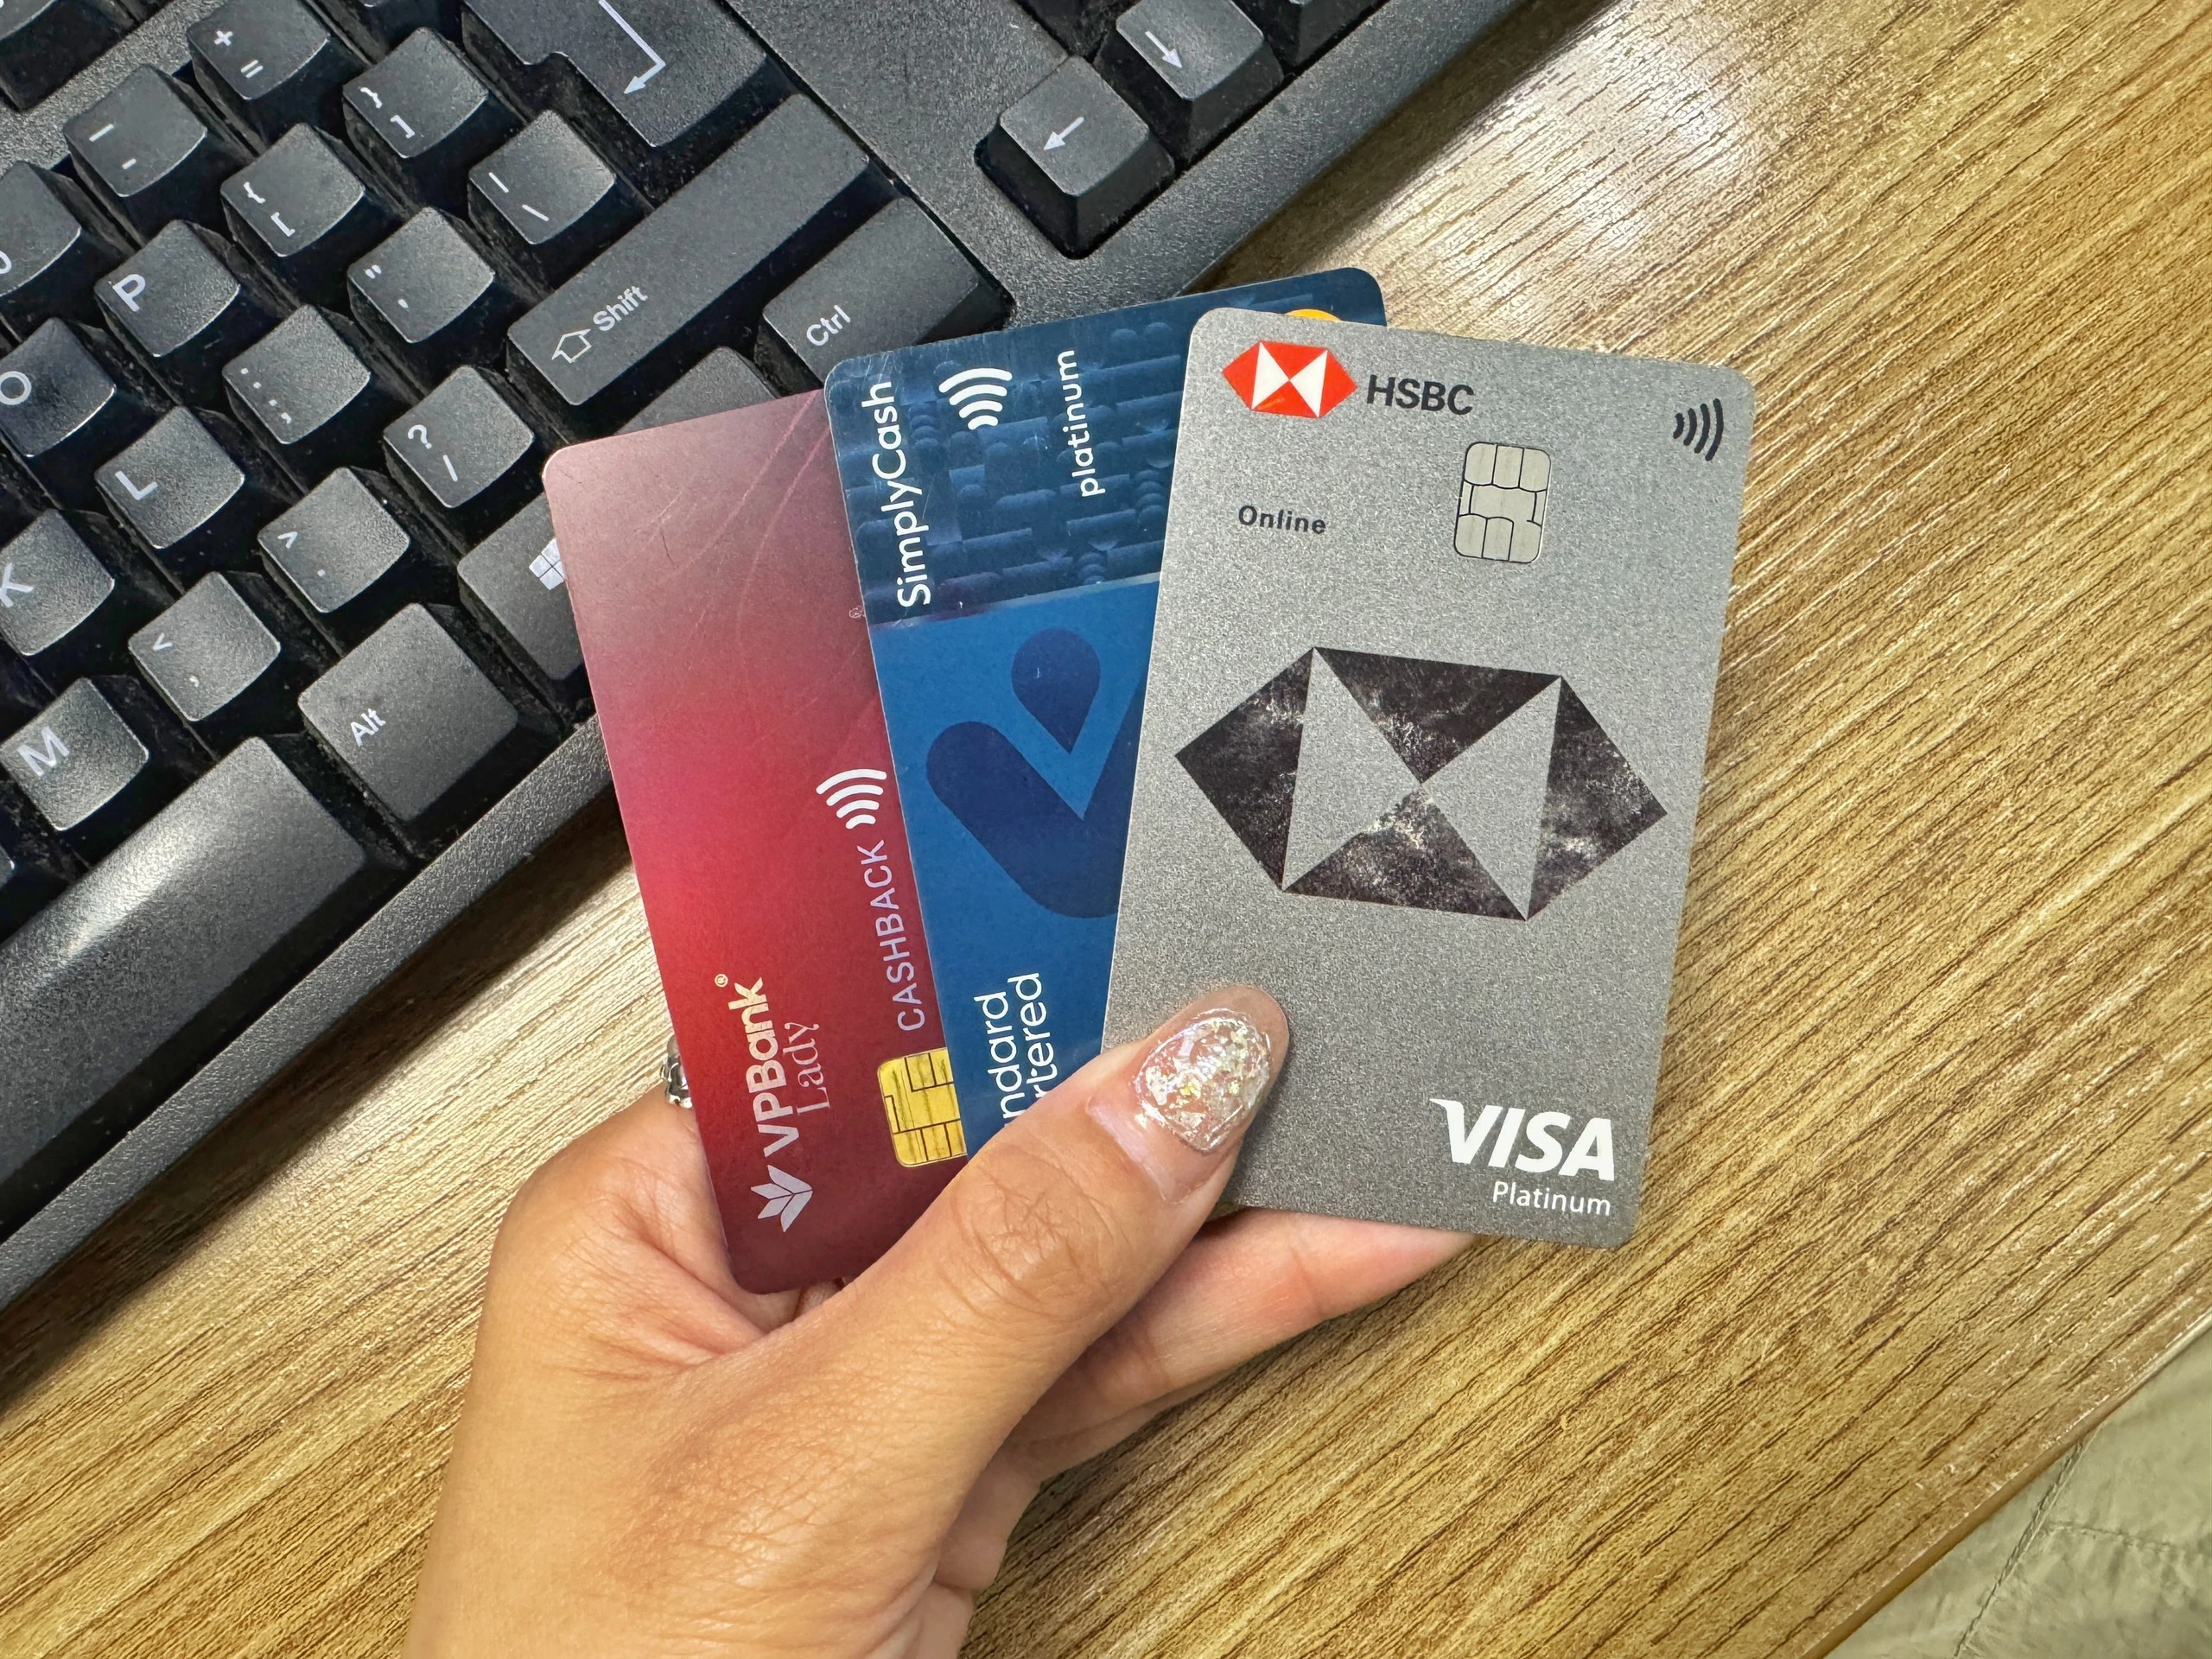 9X Hà Nội dùng 3 thẻ tín dụng cùng lúc, có lúc được hoàn đến 2 triệu/tháng nhờ cách sử dụng hợp lý - Ảnh 1.